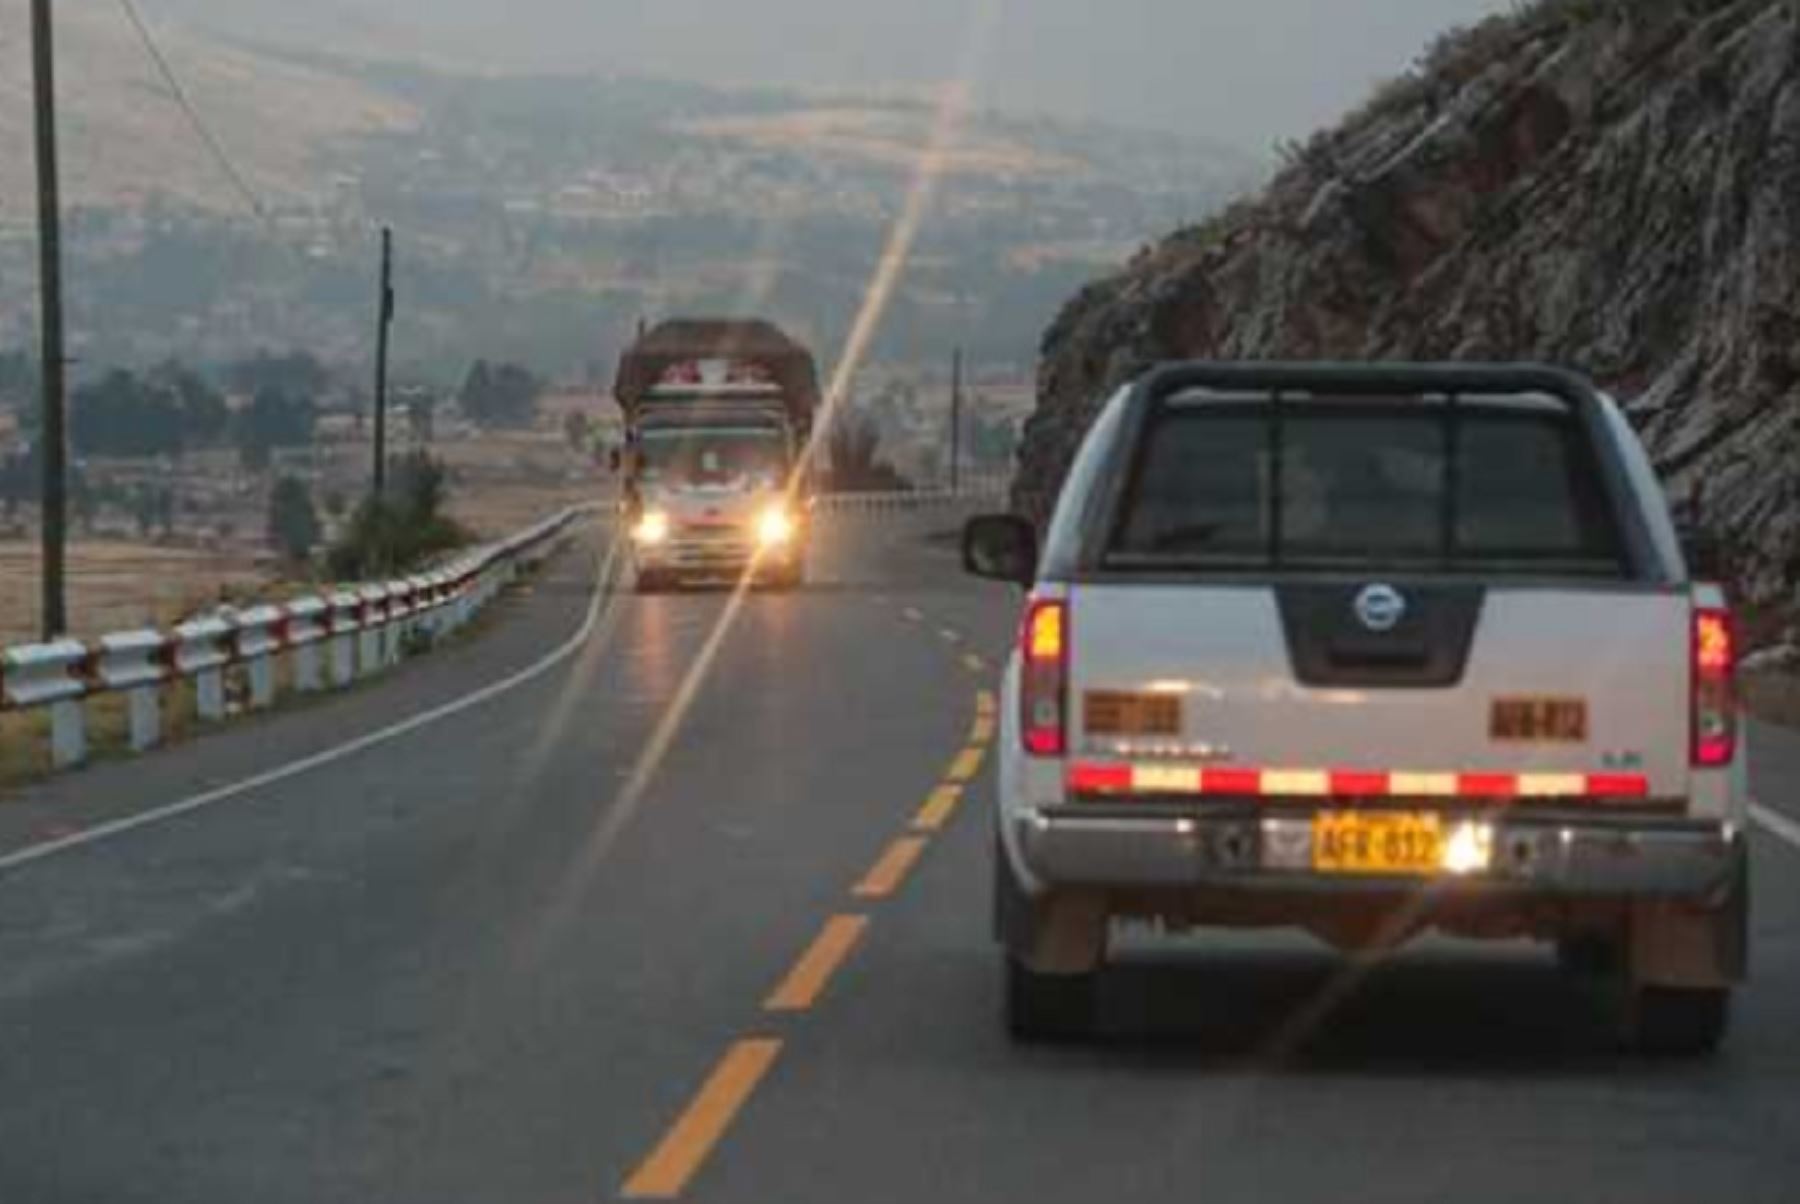 El uso correcto y mantenimiento oportuno de las luces de tu vehículo son claves para tu seguridad durante tu viaje en carretera.